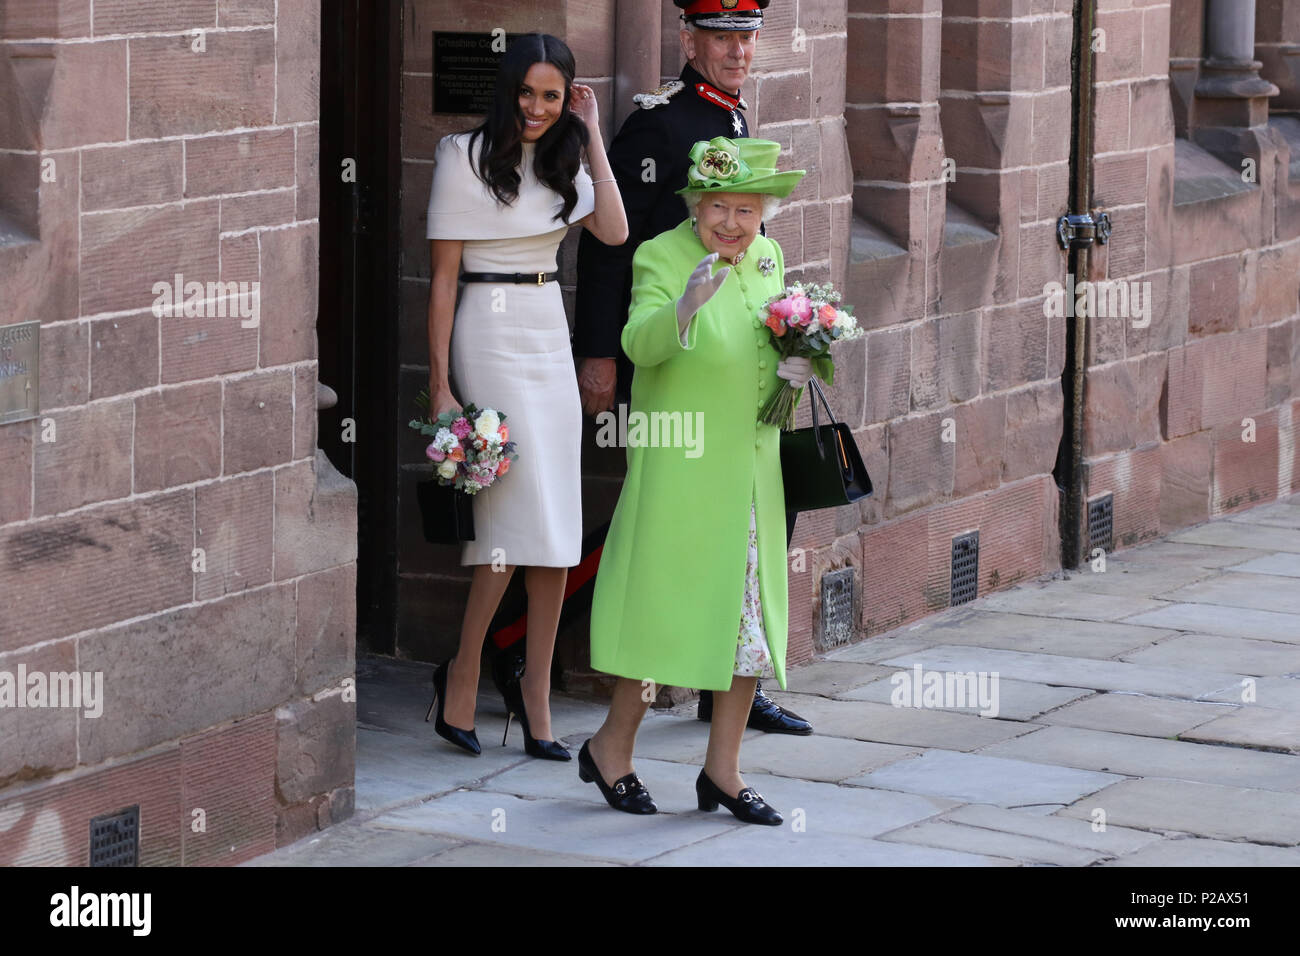 Königin Elizabeth II und Meghan Markle, Herzogin von Sussex, besuchen Sie Chester auf ihren ersten öffentlichen Engagement zusammen. Chester, Cheshire, am 14. Juni 2018. Credit: Paul Marriott/Alamy leben Nachrichten Stockfoto